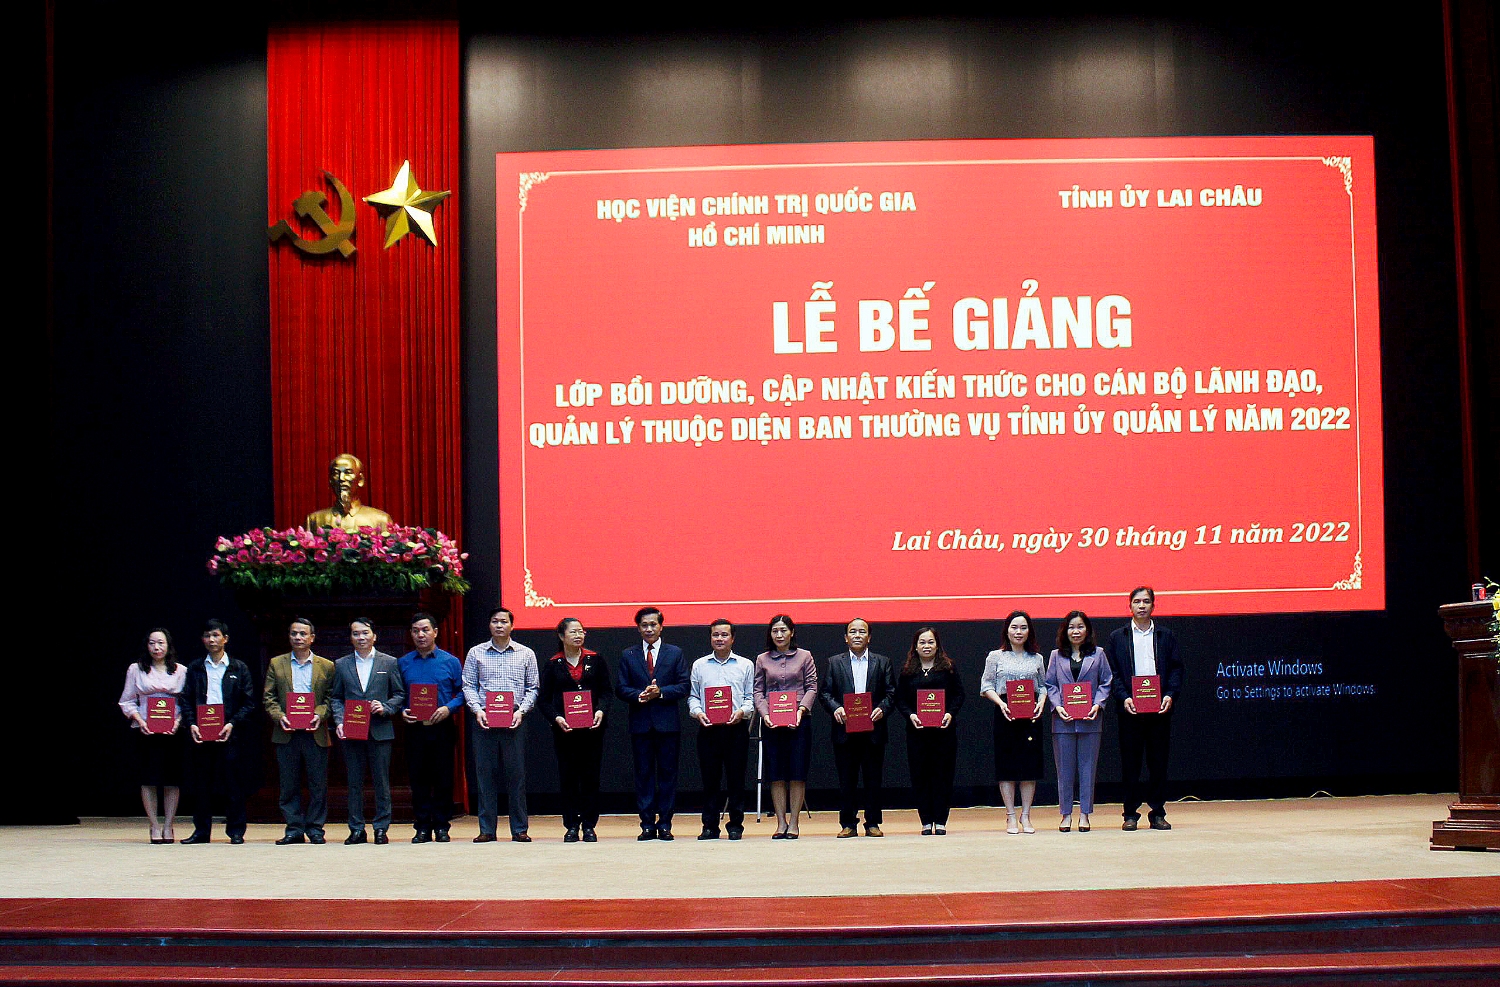 PGS. TS Hoàng Phúc Lâm - Phó Giám đốc Học viện Chính trị Quốc gia Hồ Chí Minh trao giấy chứng nhận cho các học viên